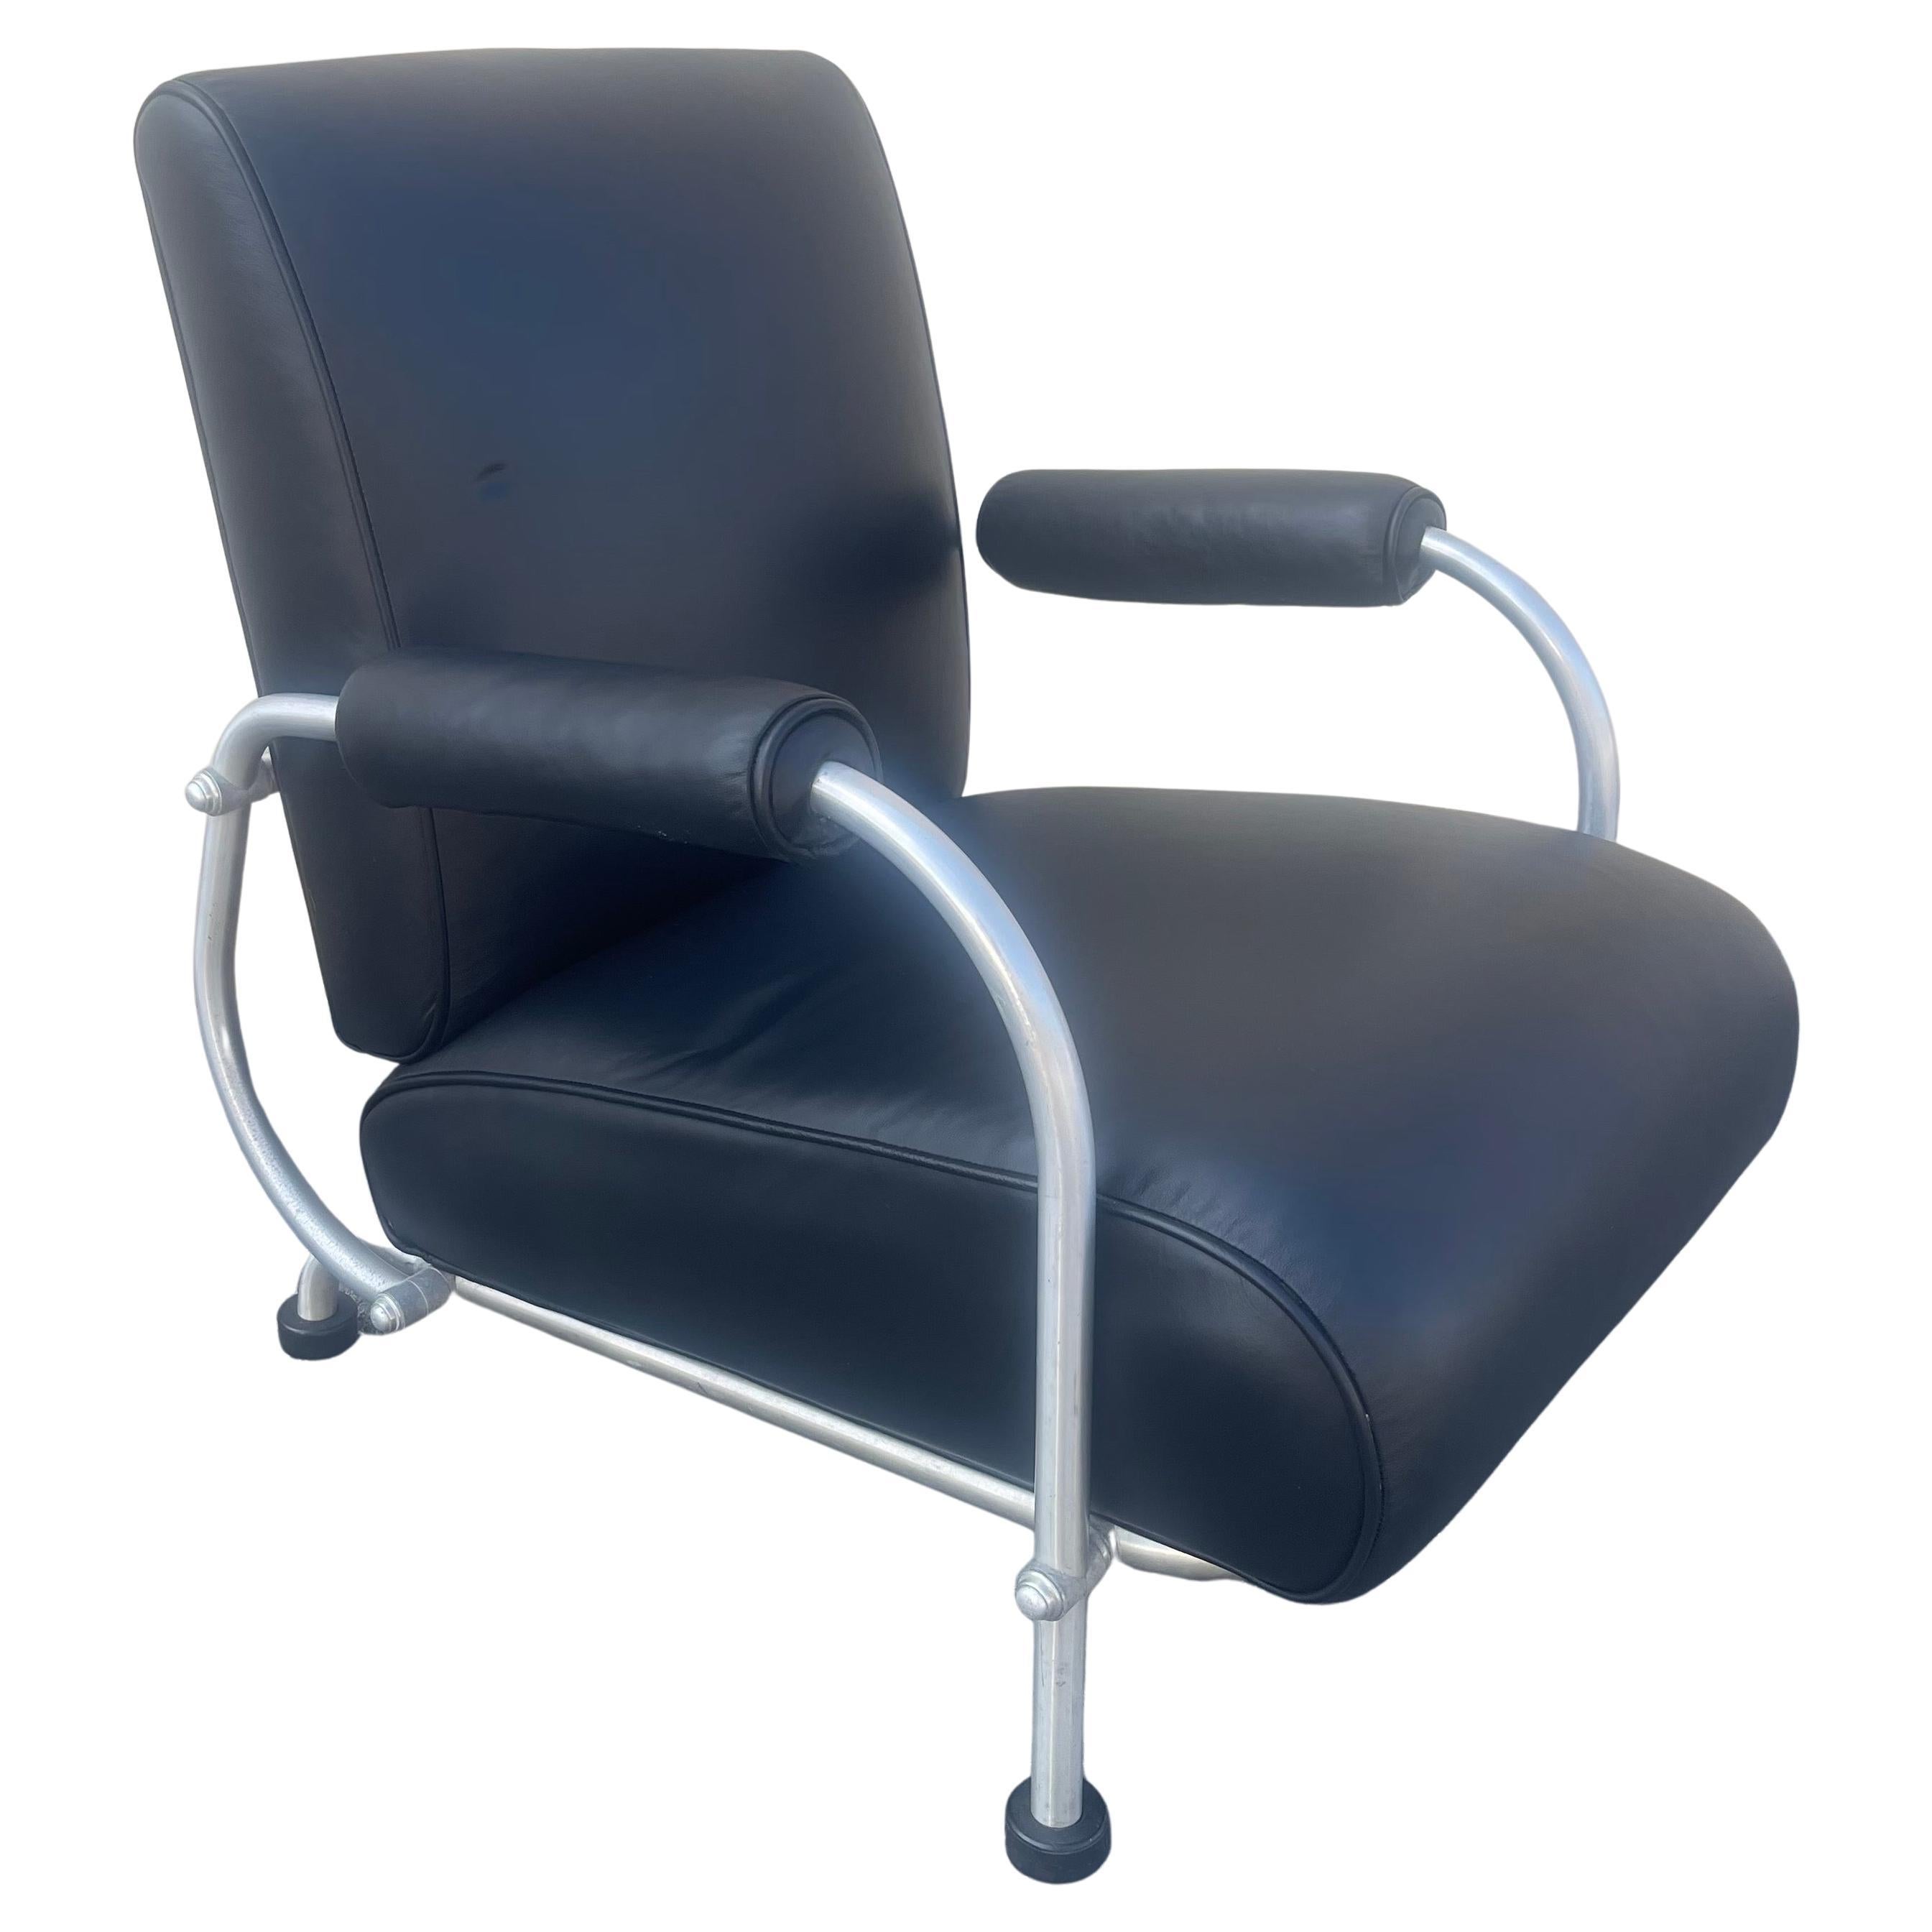 Chaise longue Art déco en aluminium et cuir noir avec pieds en forme de rondelle de hockey par Warren McArthur, vers les années 1930. Le cadre et les pieds de la chaise sont en excellent état d'origine, tandis que la tapisserie a été récemment